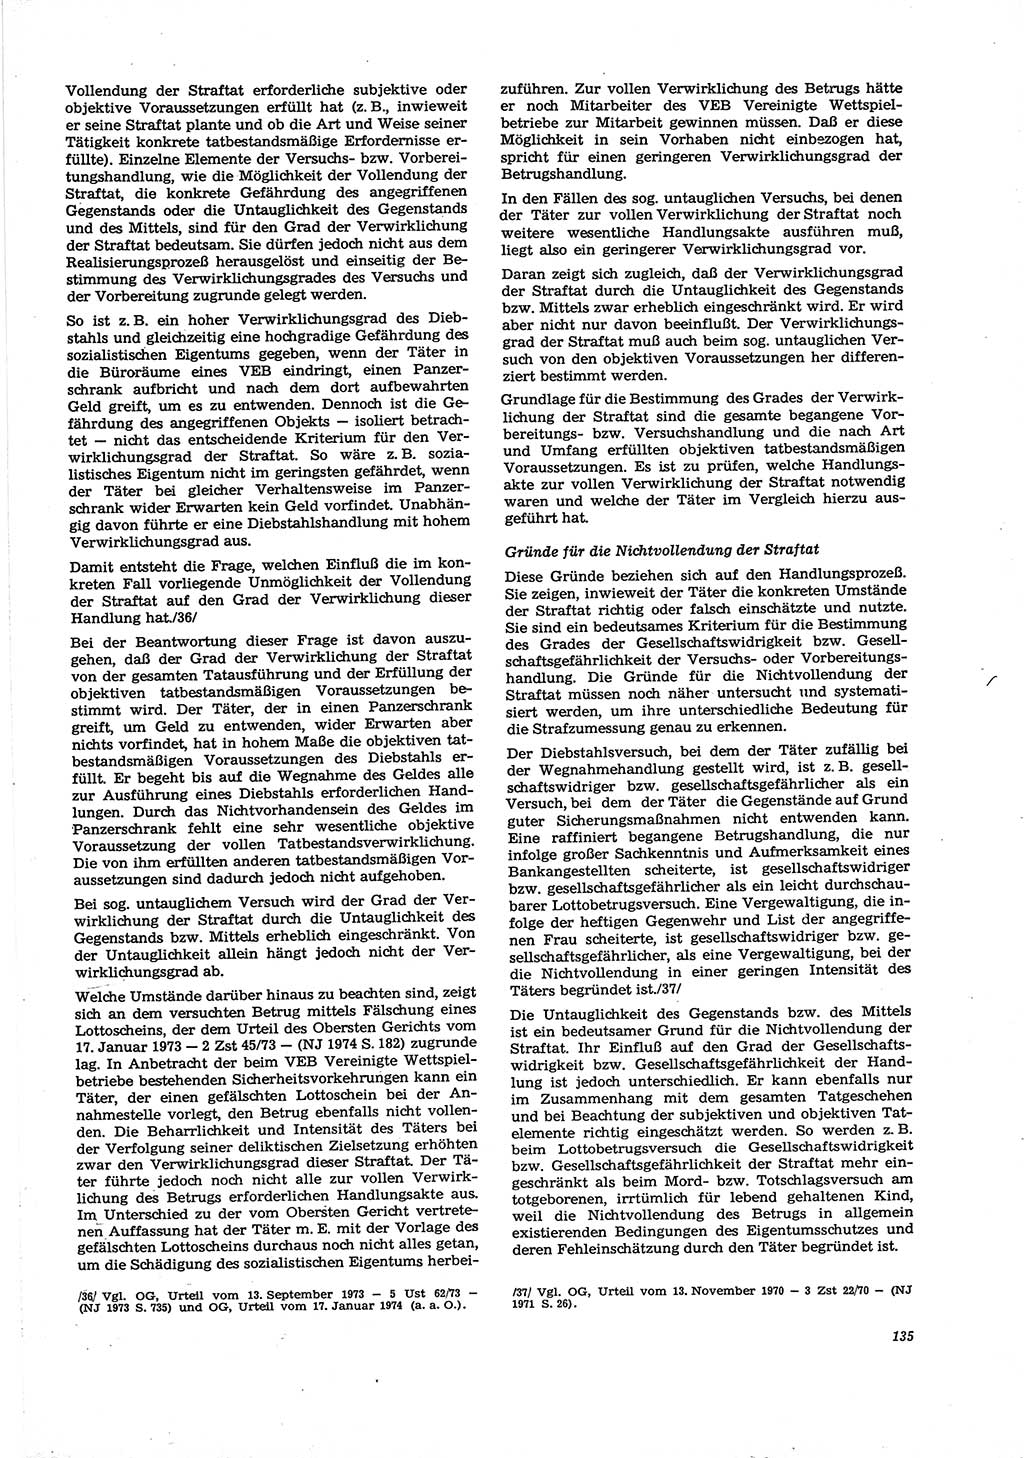 Neue Justiz (NJ), Zeitschrift für Recht und Rechtswissenschaft [Deutsche Demokratische Republik (DDR)], 29. Jahrgang 1975, Seite 135 (NJ DDR 1975, S. 135)